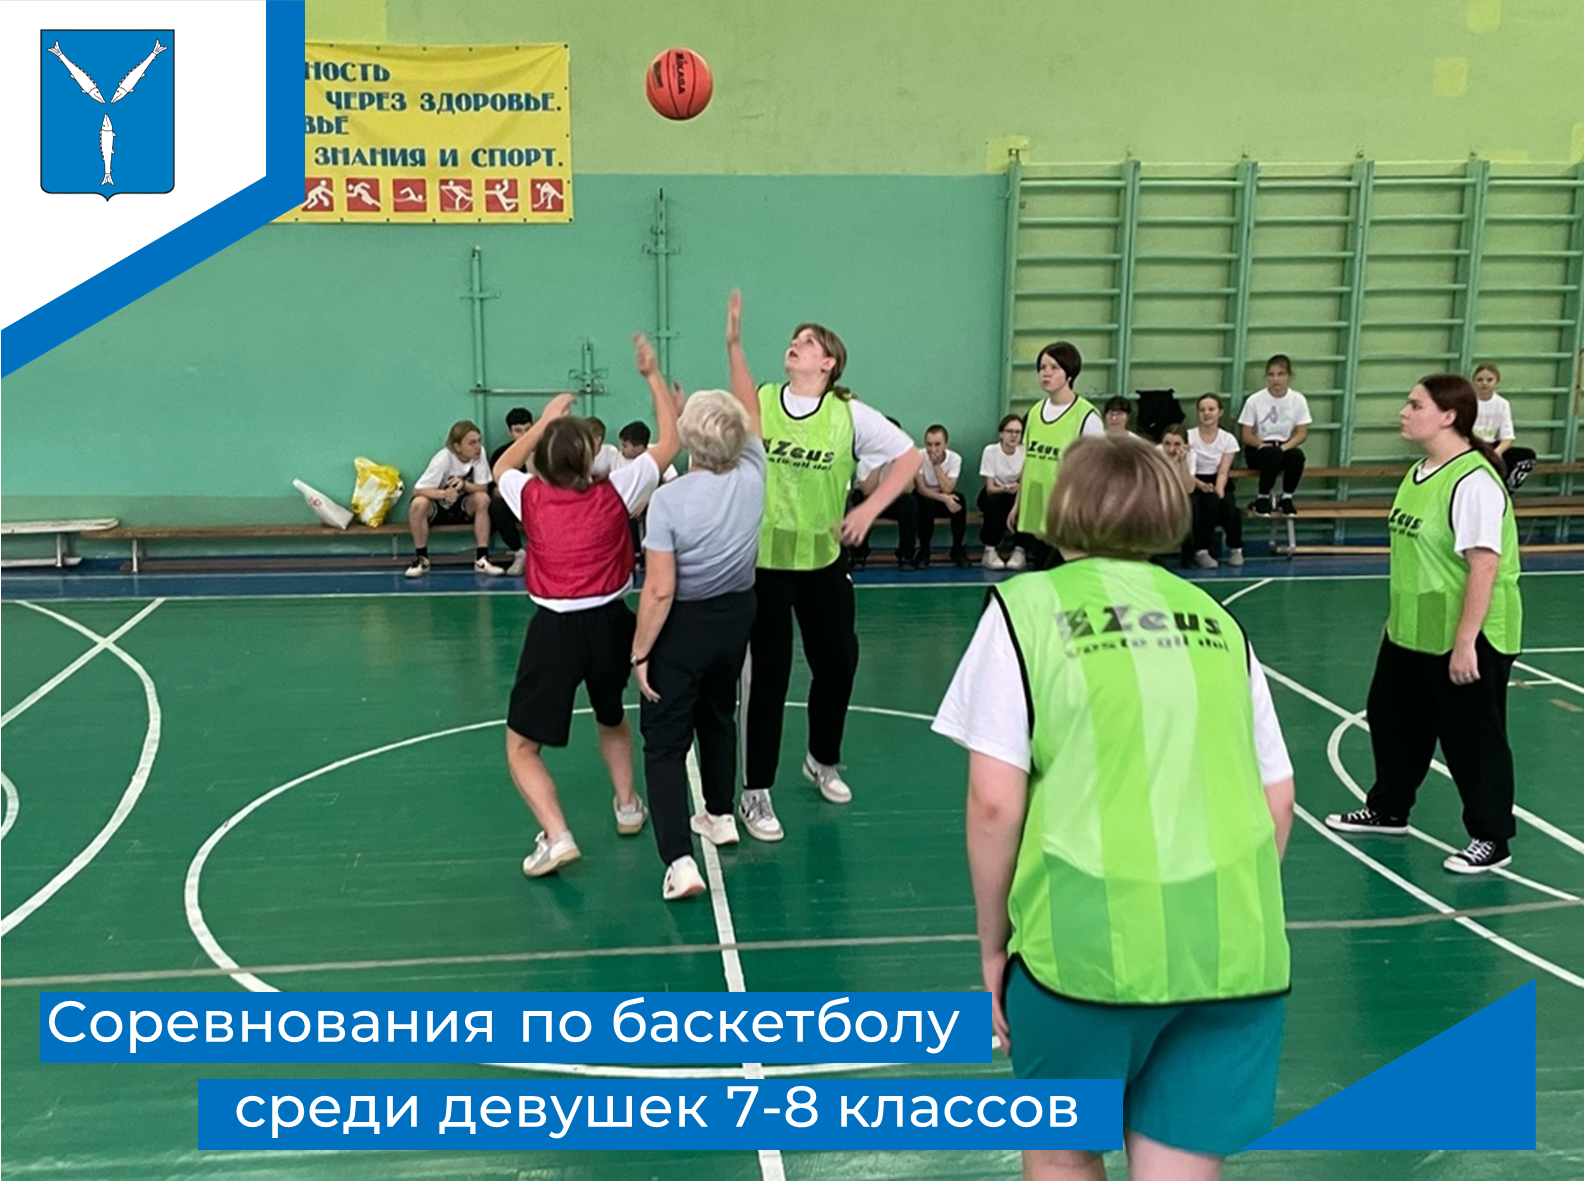 Соревнования по баскетболу среди девушек 7-8 классов.